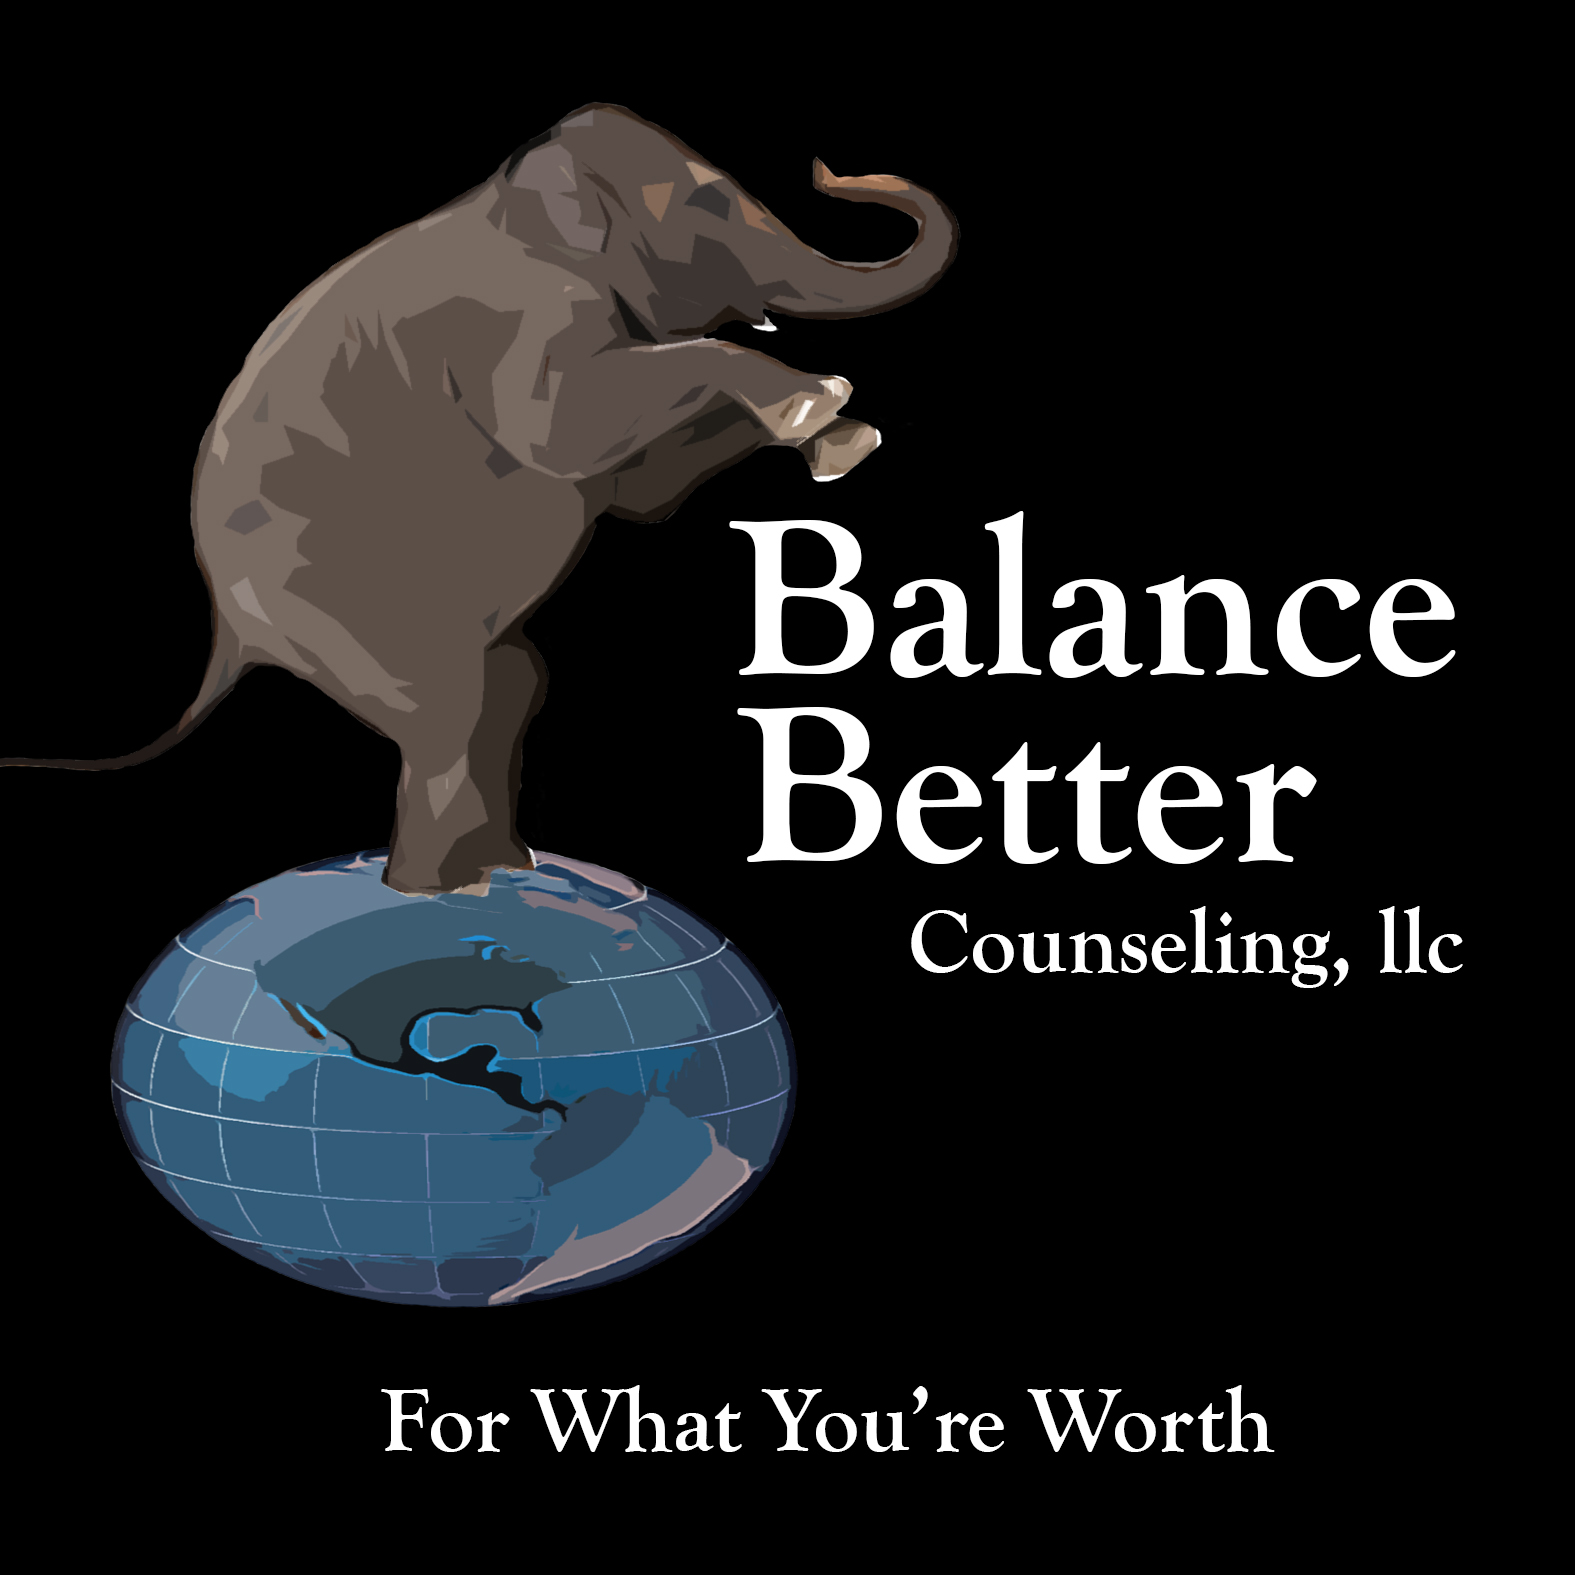 Balance Better Counseling